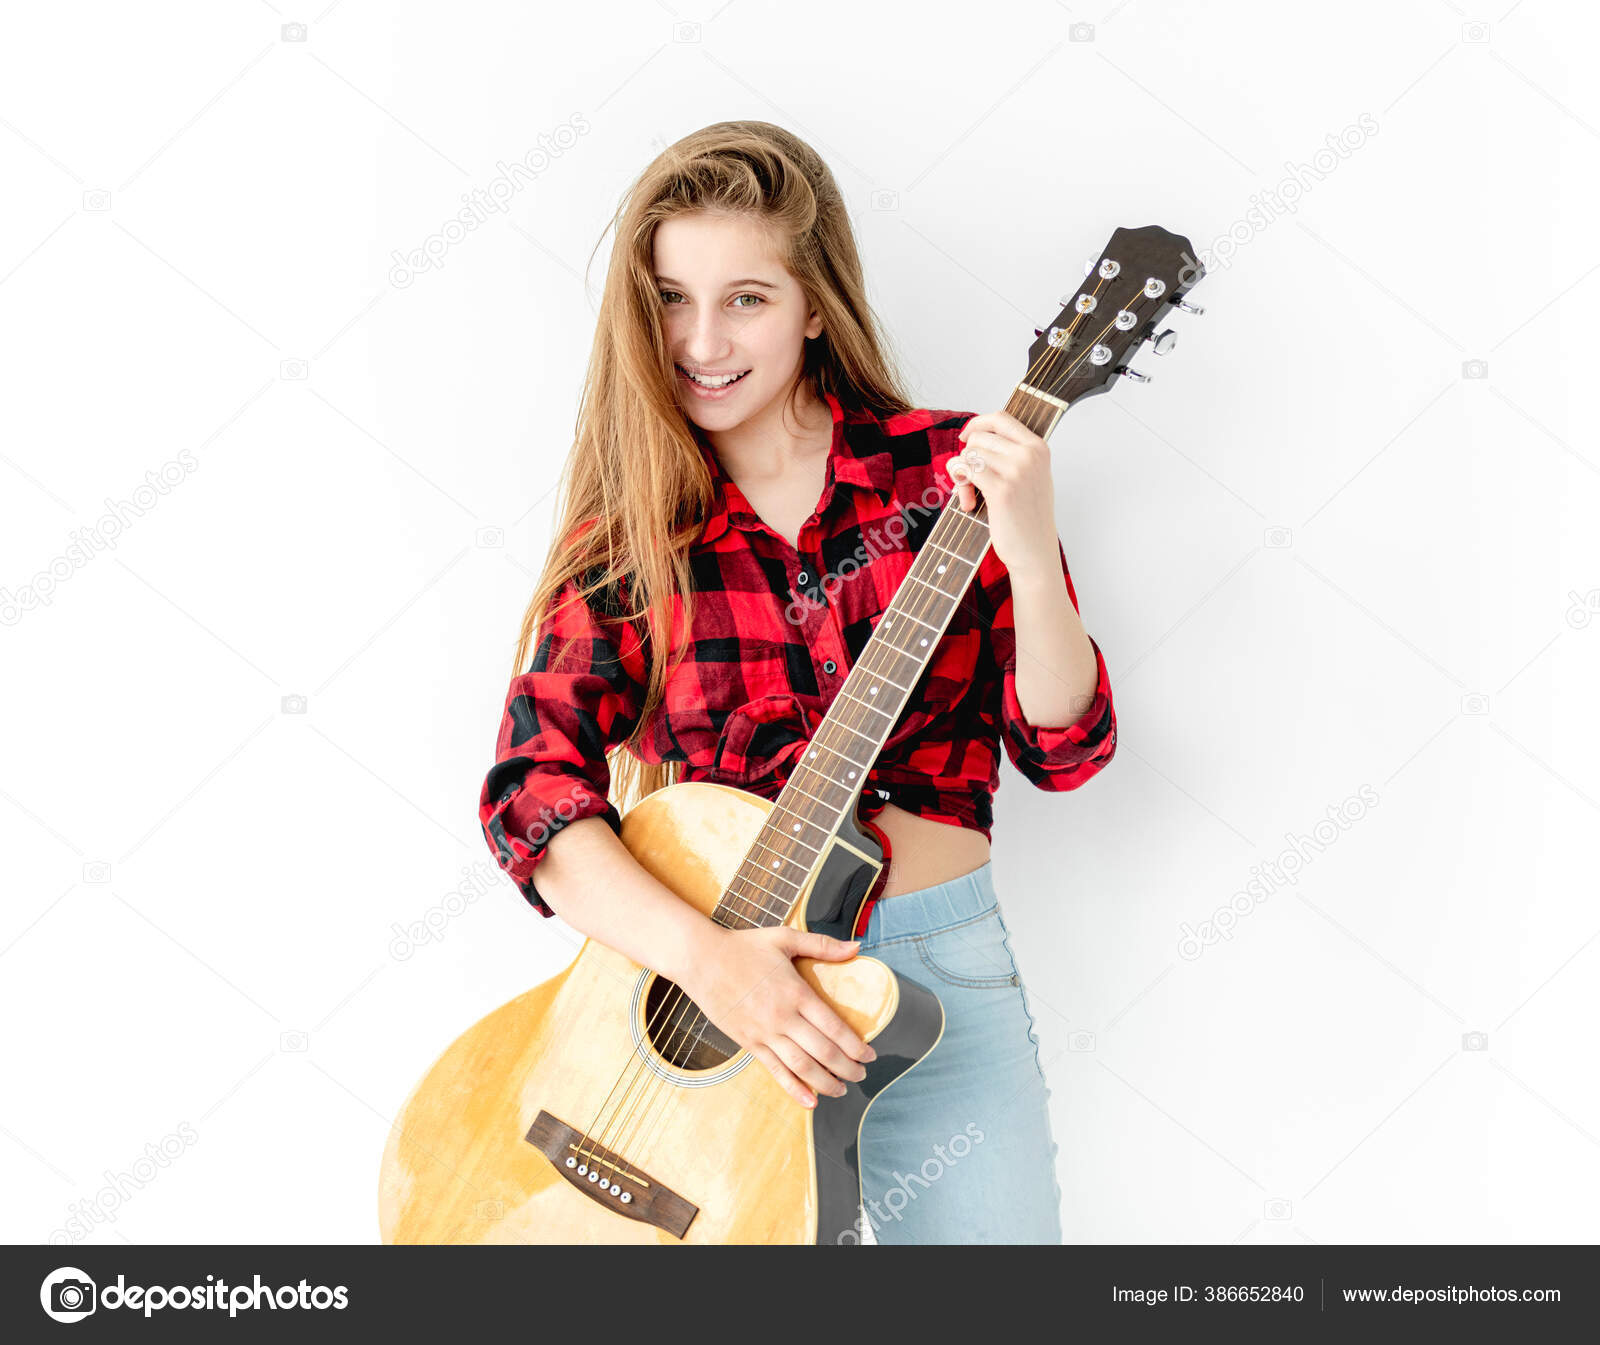 Premium Photo | Cute girl posing with guitar